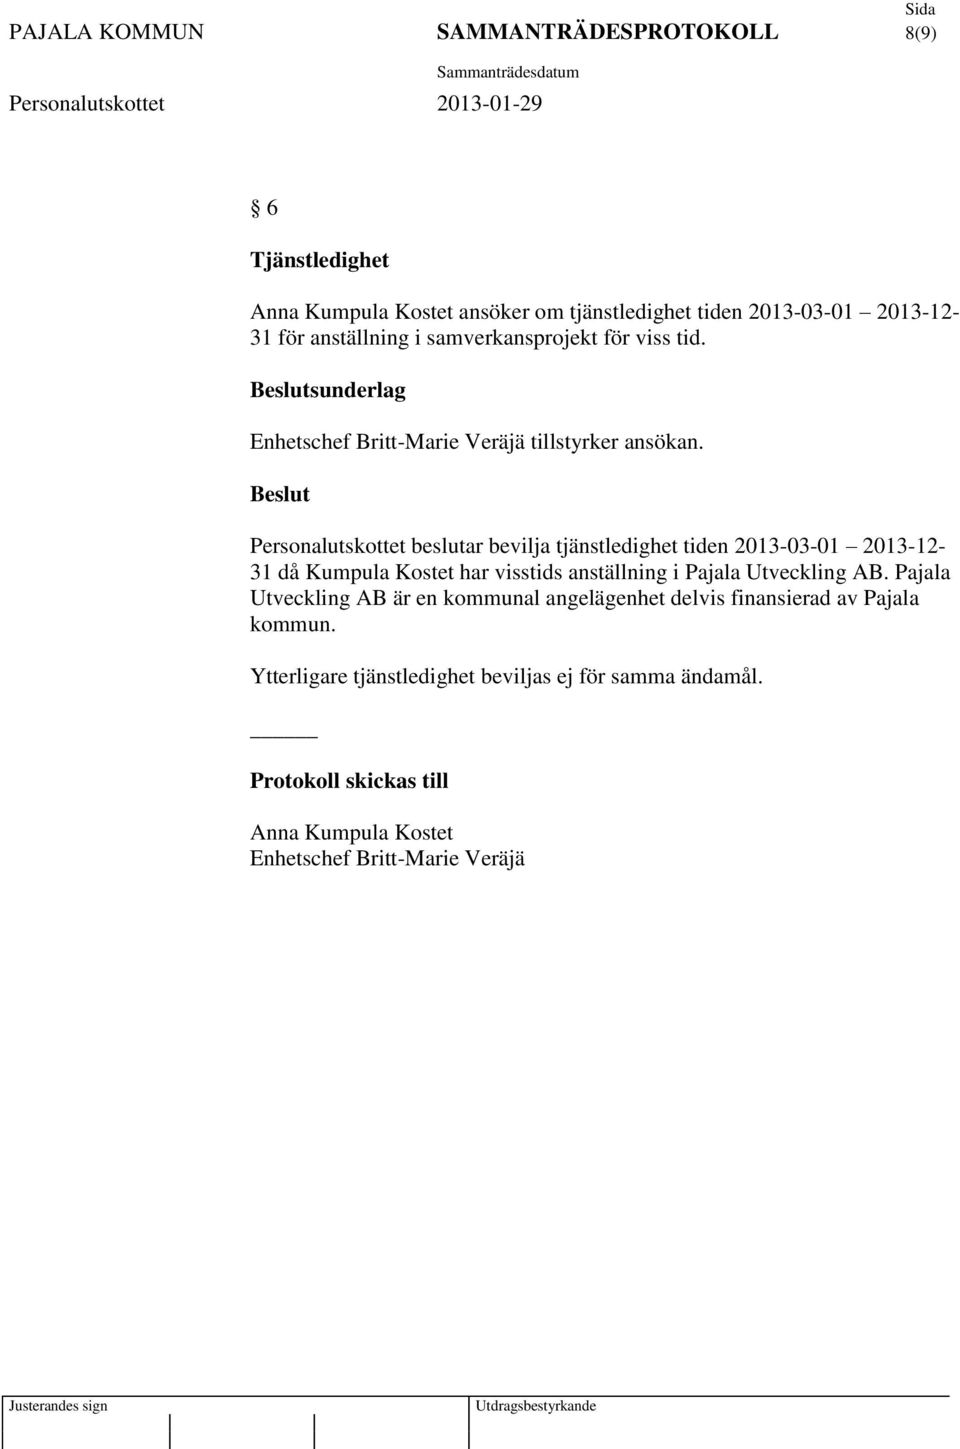 Personalutskottet beslutar bevilja tjänstledighet tiden 2013-03-01 2013-12- 31 då Kumpula Kostet har visstids anställning i Pajala Utveckling AB.